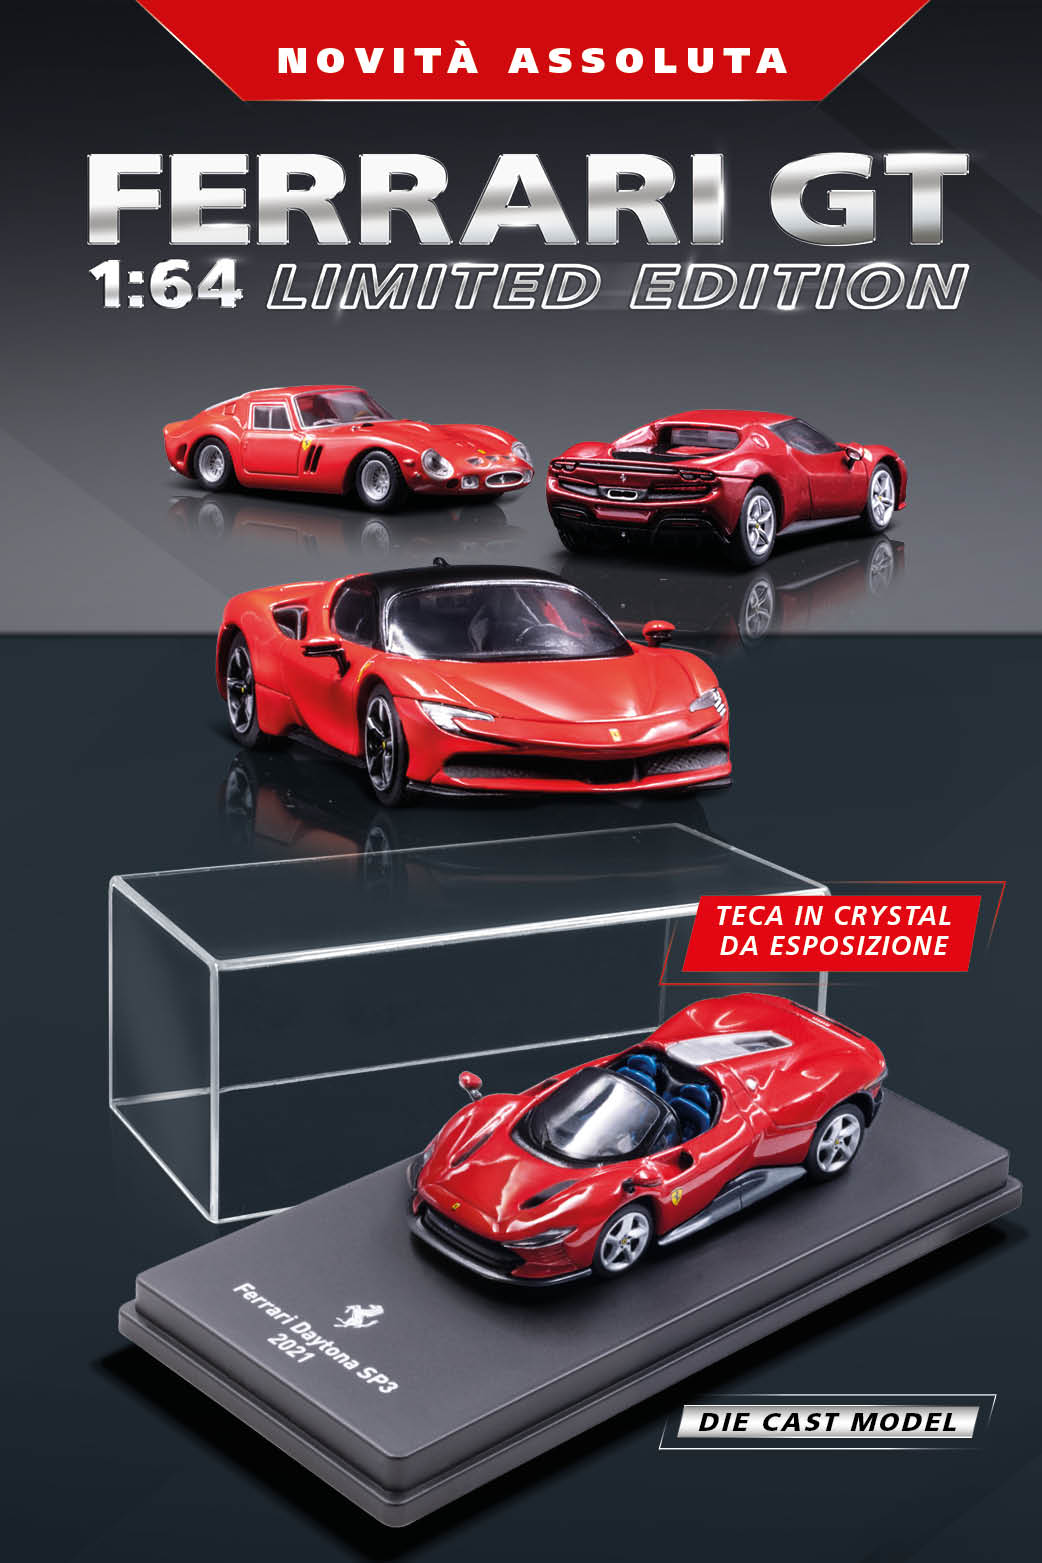 Ferrari Gran Turismo 1:64 gadget 057